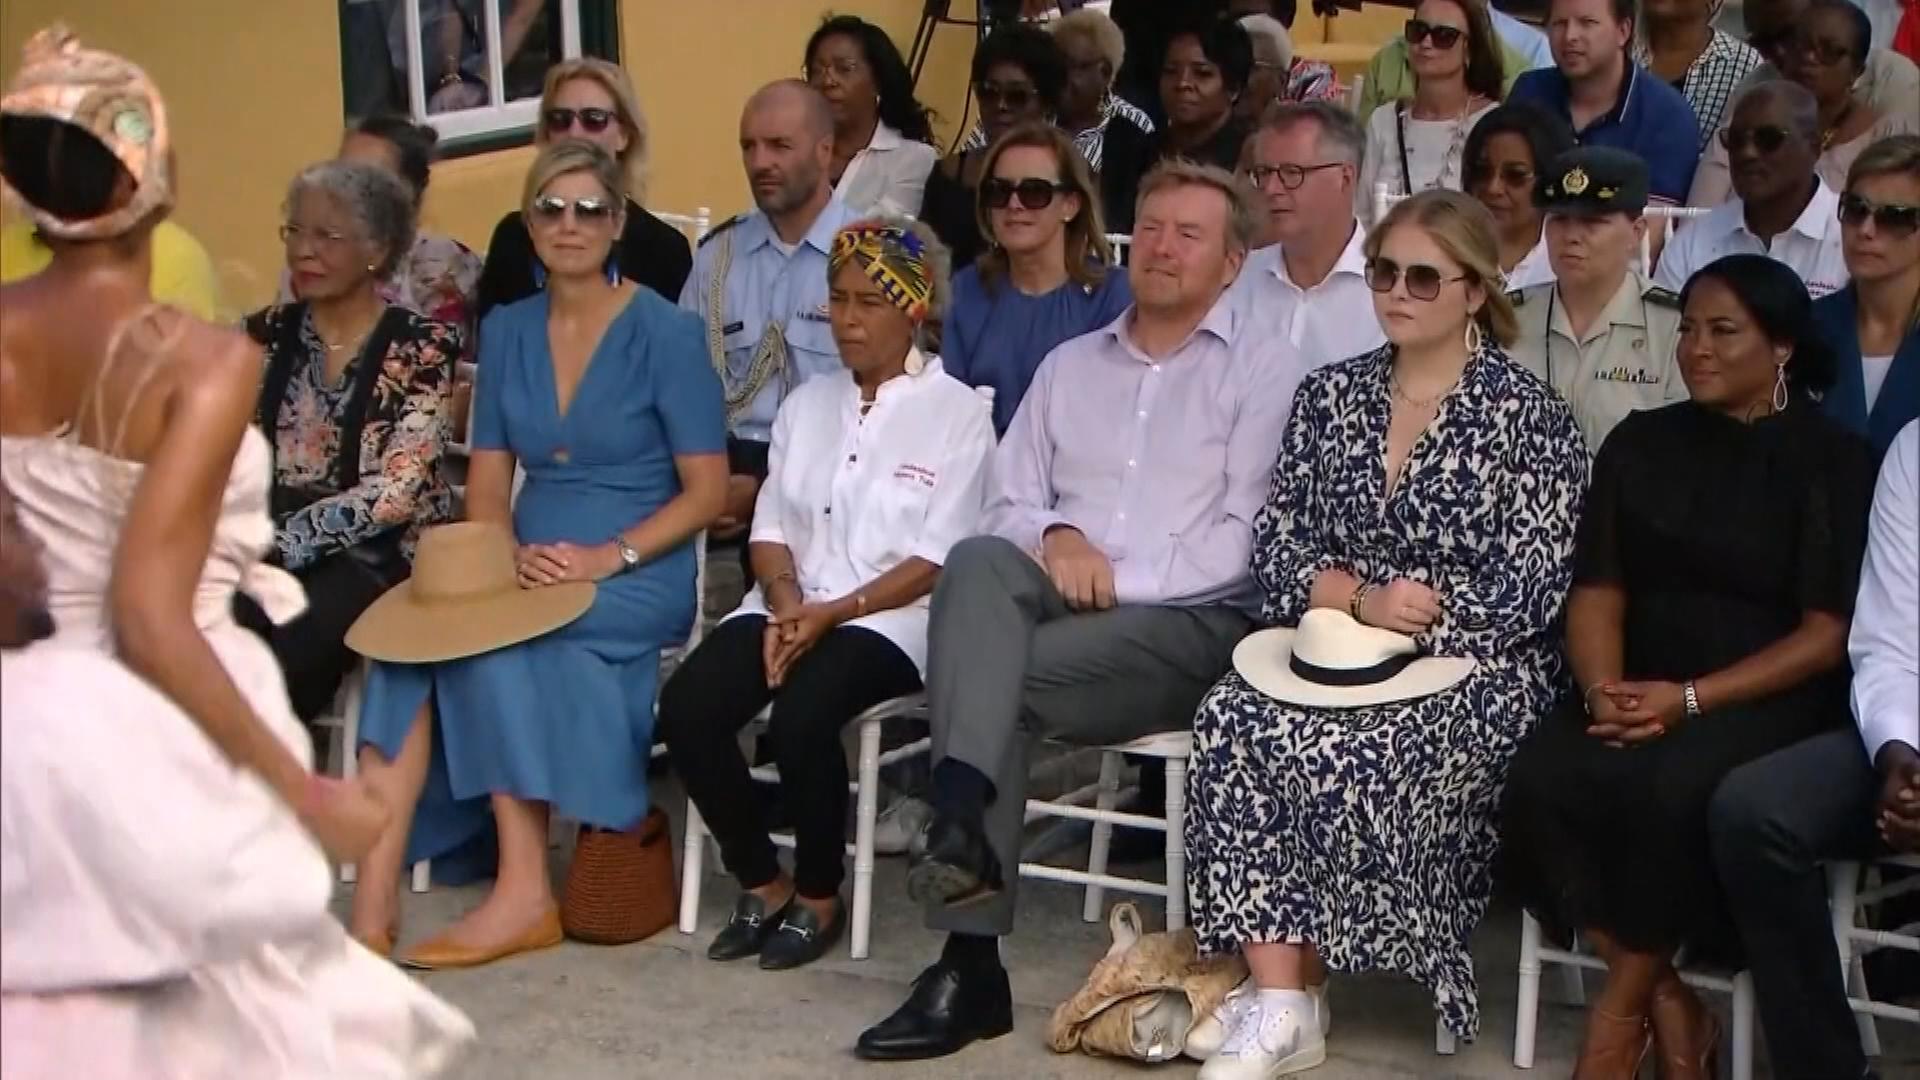 Niederländische Königsfamilie in der Karibik, sitzt bei einer Veranstaltung umgeben von anderen Menschen 